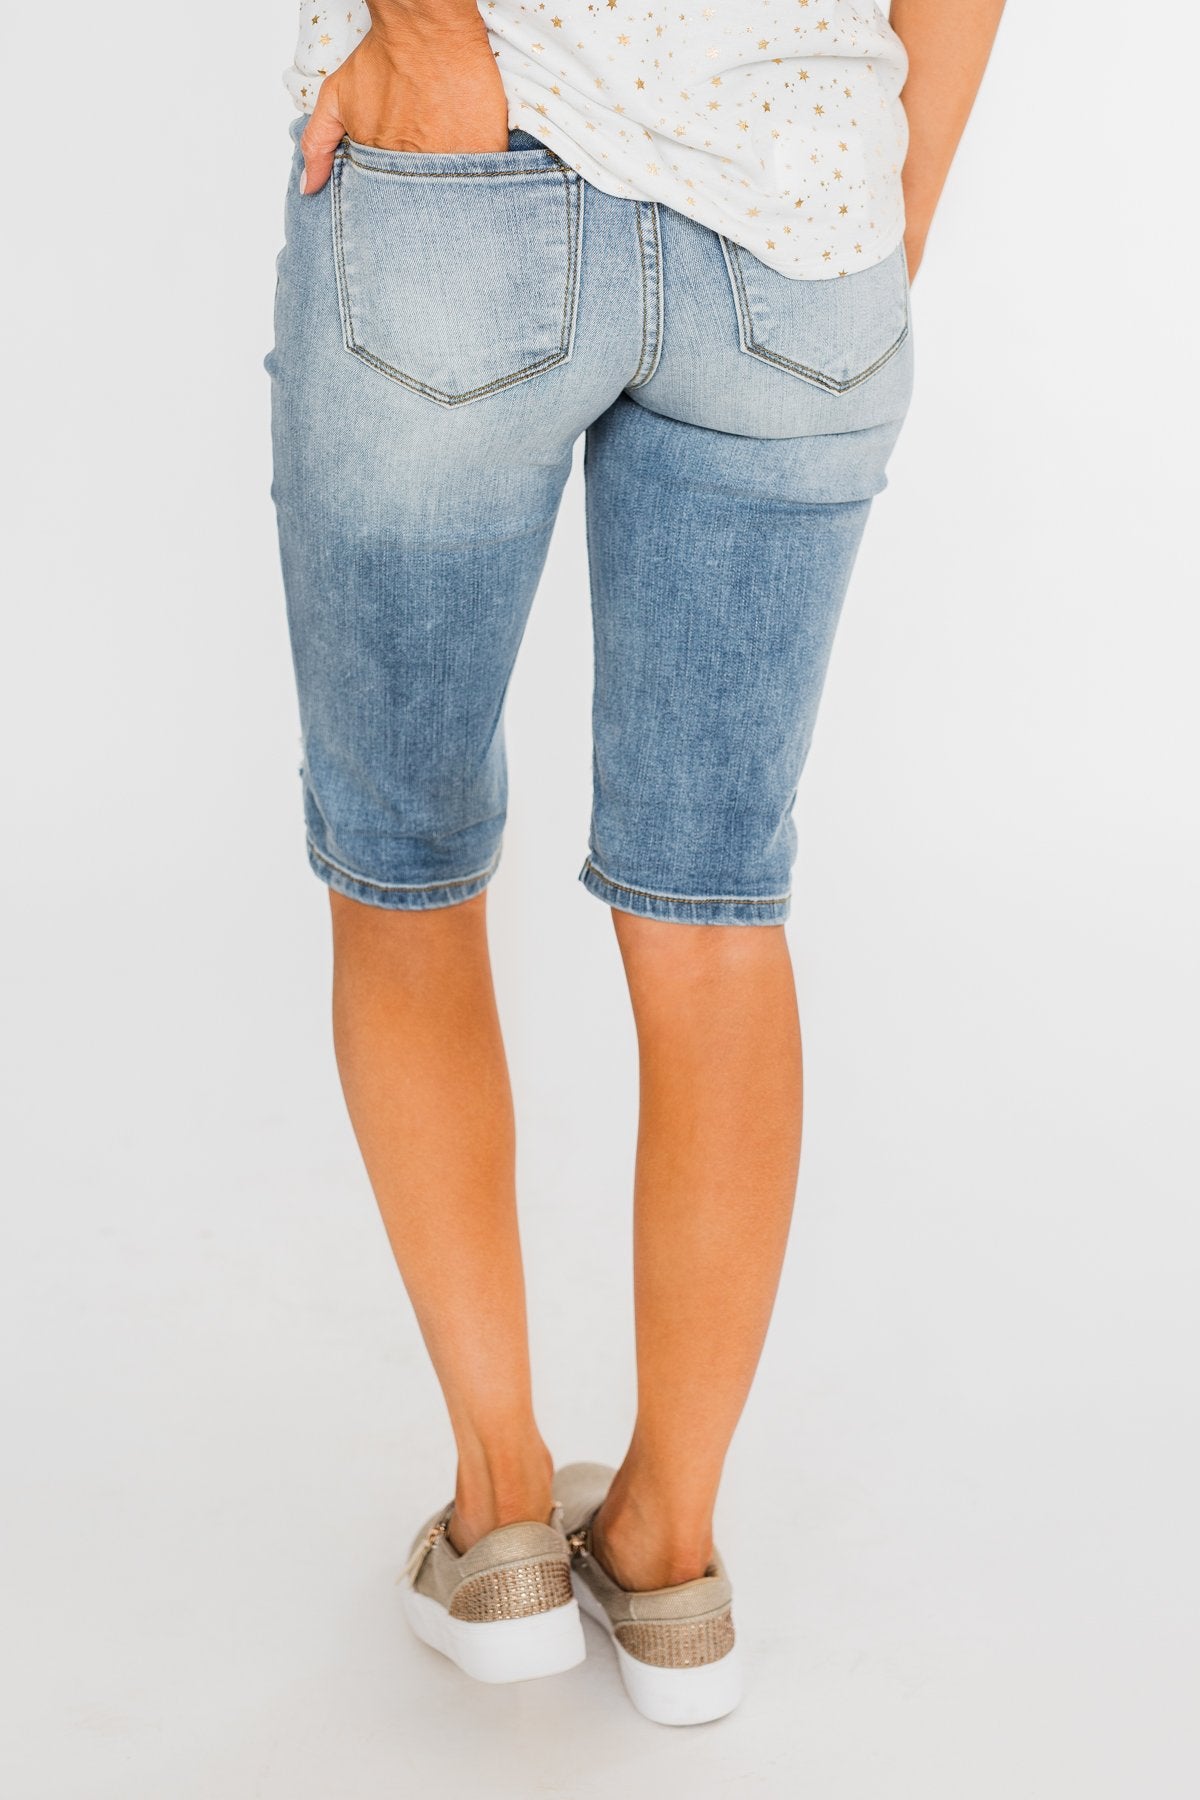 KanCan Distressed Bermuda Shorts- Ciara Wash